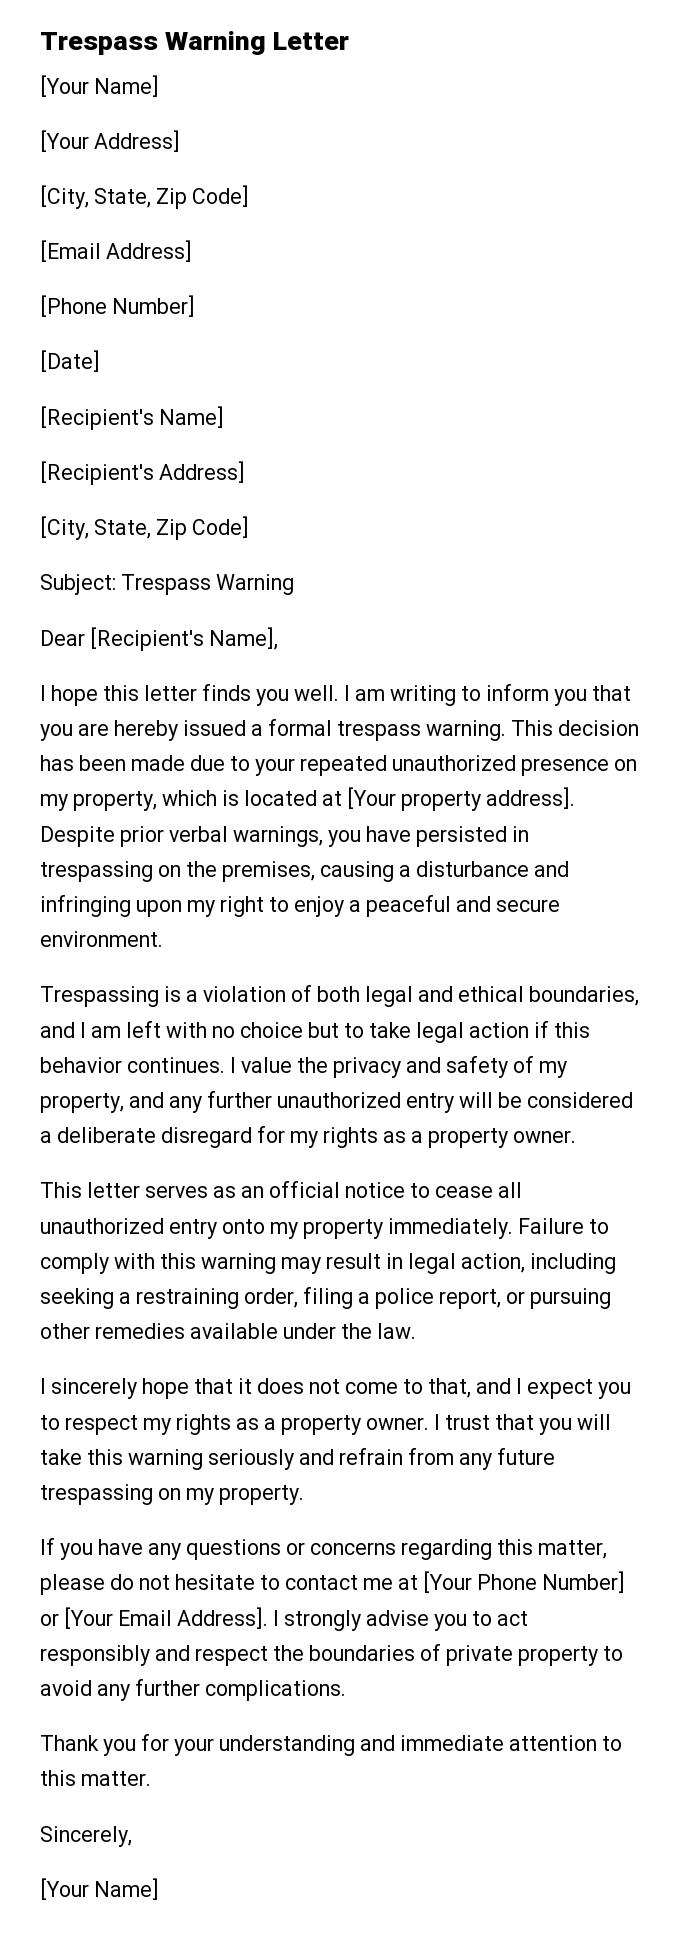 Trespass Warning Letter